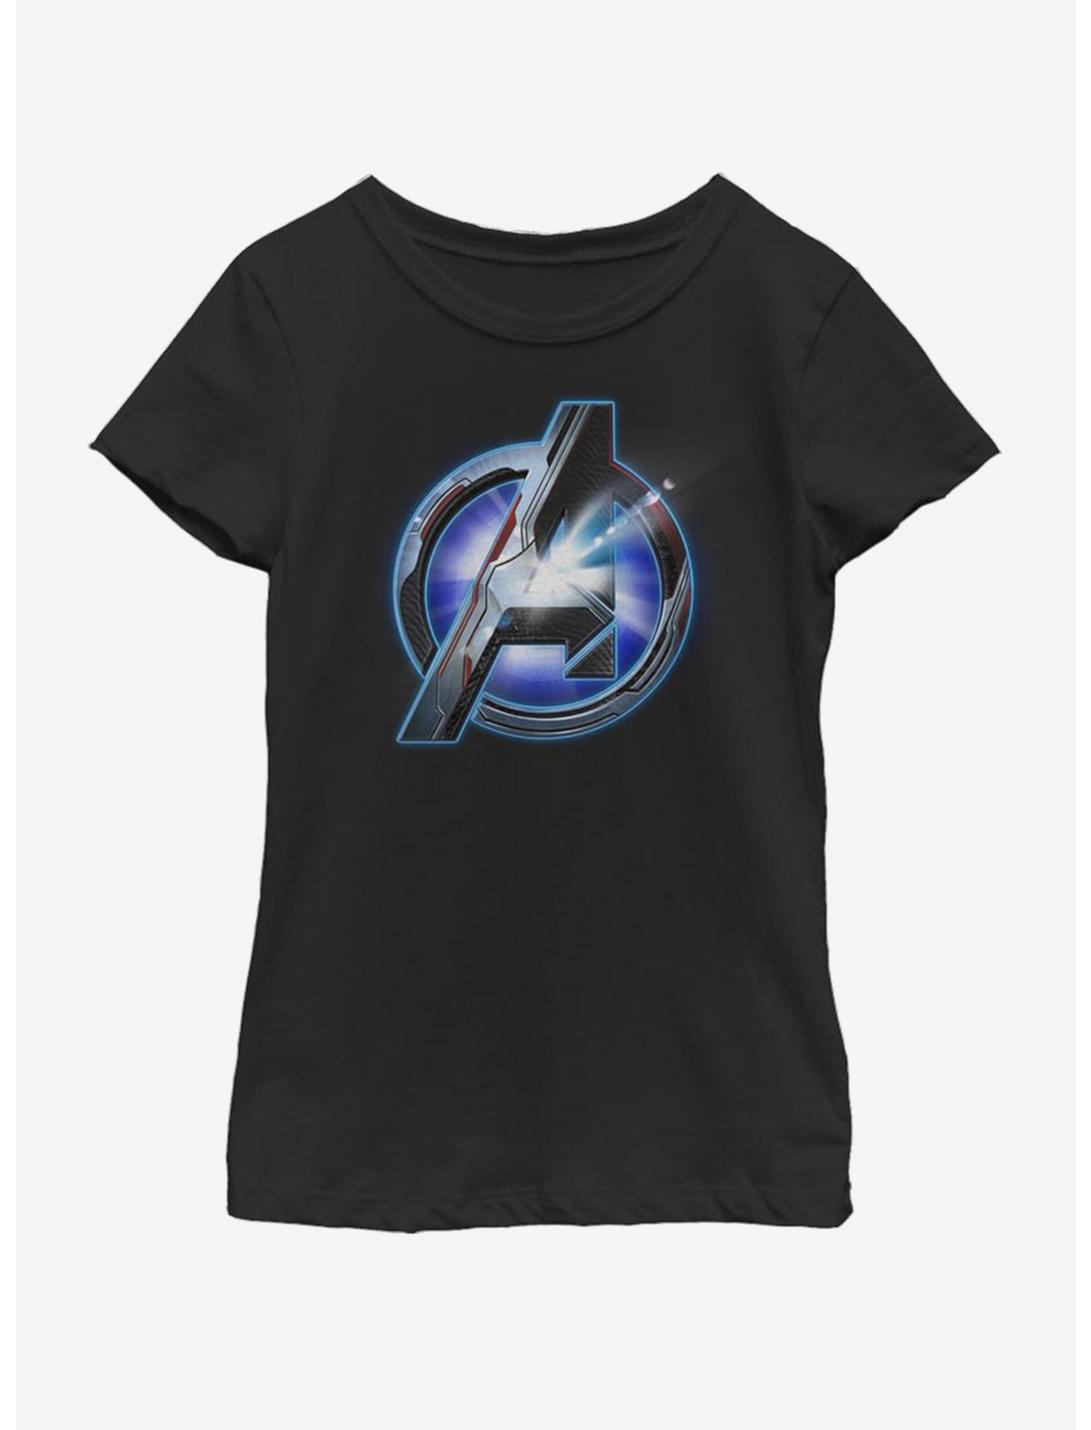 Marvel Avengers: Endgame Endgame logo Shine Youth Girls T-Shirt, BLACK, hi-res